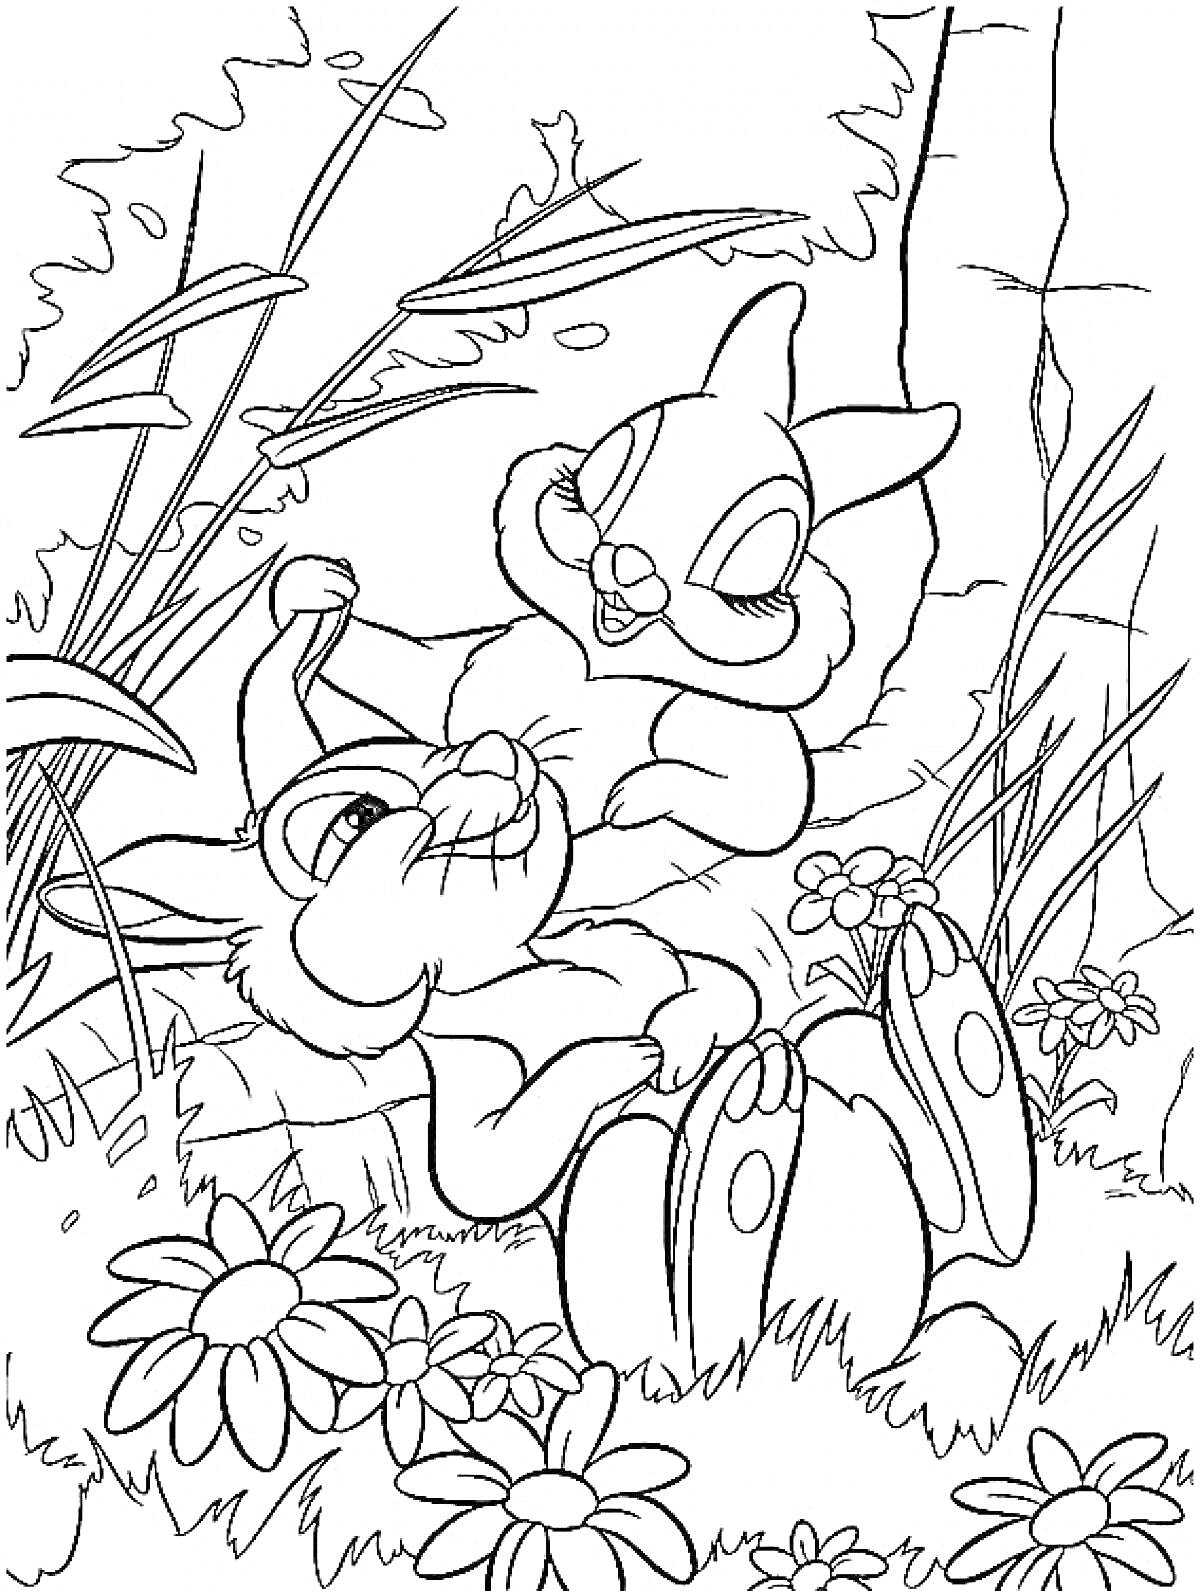 Раскраска Два кролика играют на лугу с цветами, окружённые травой и растениями с каменной стеной на заднем плане